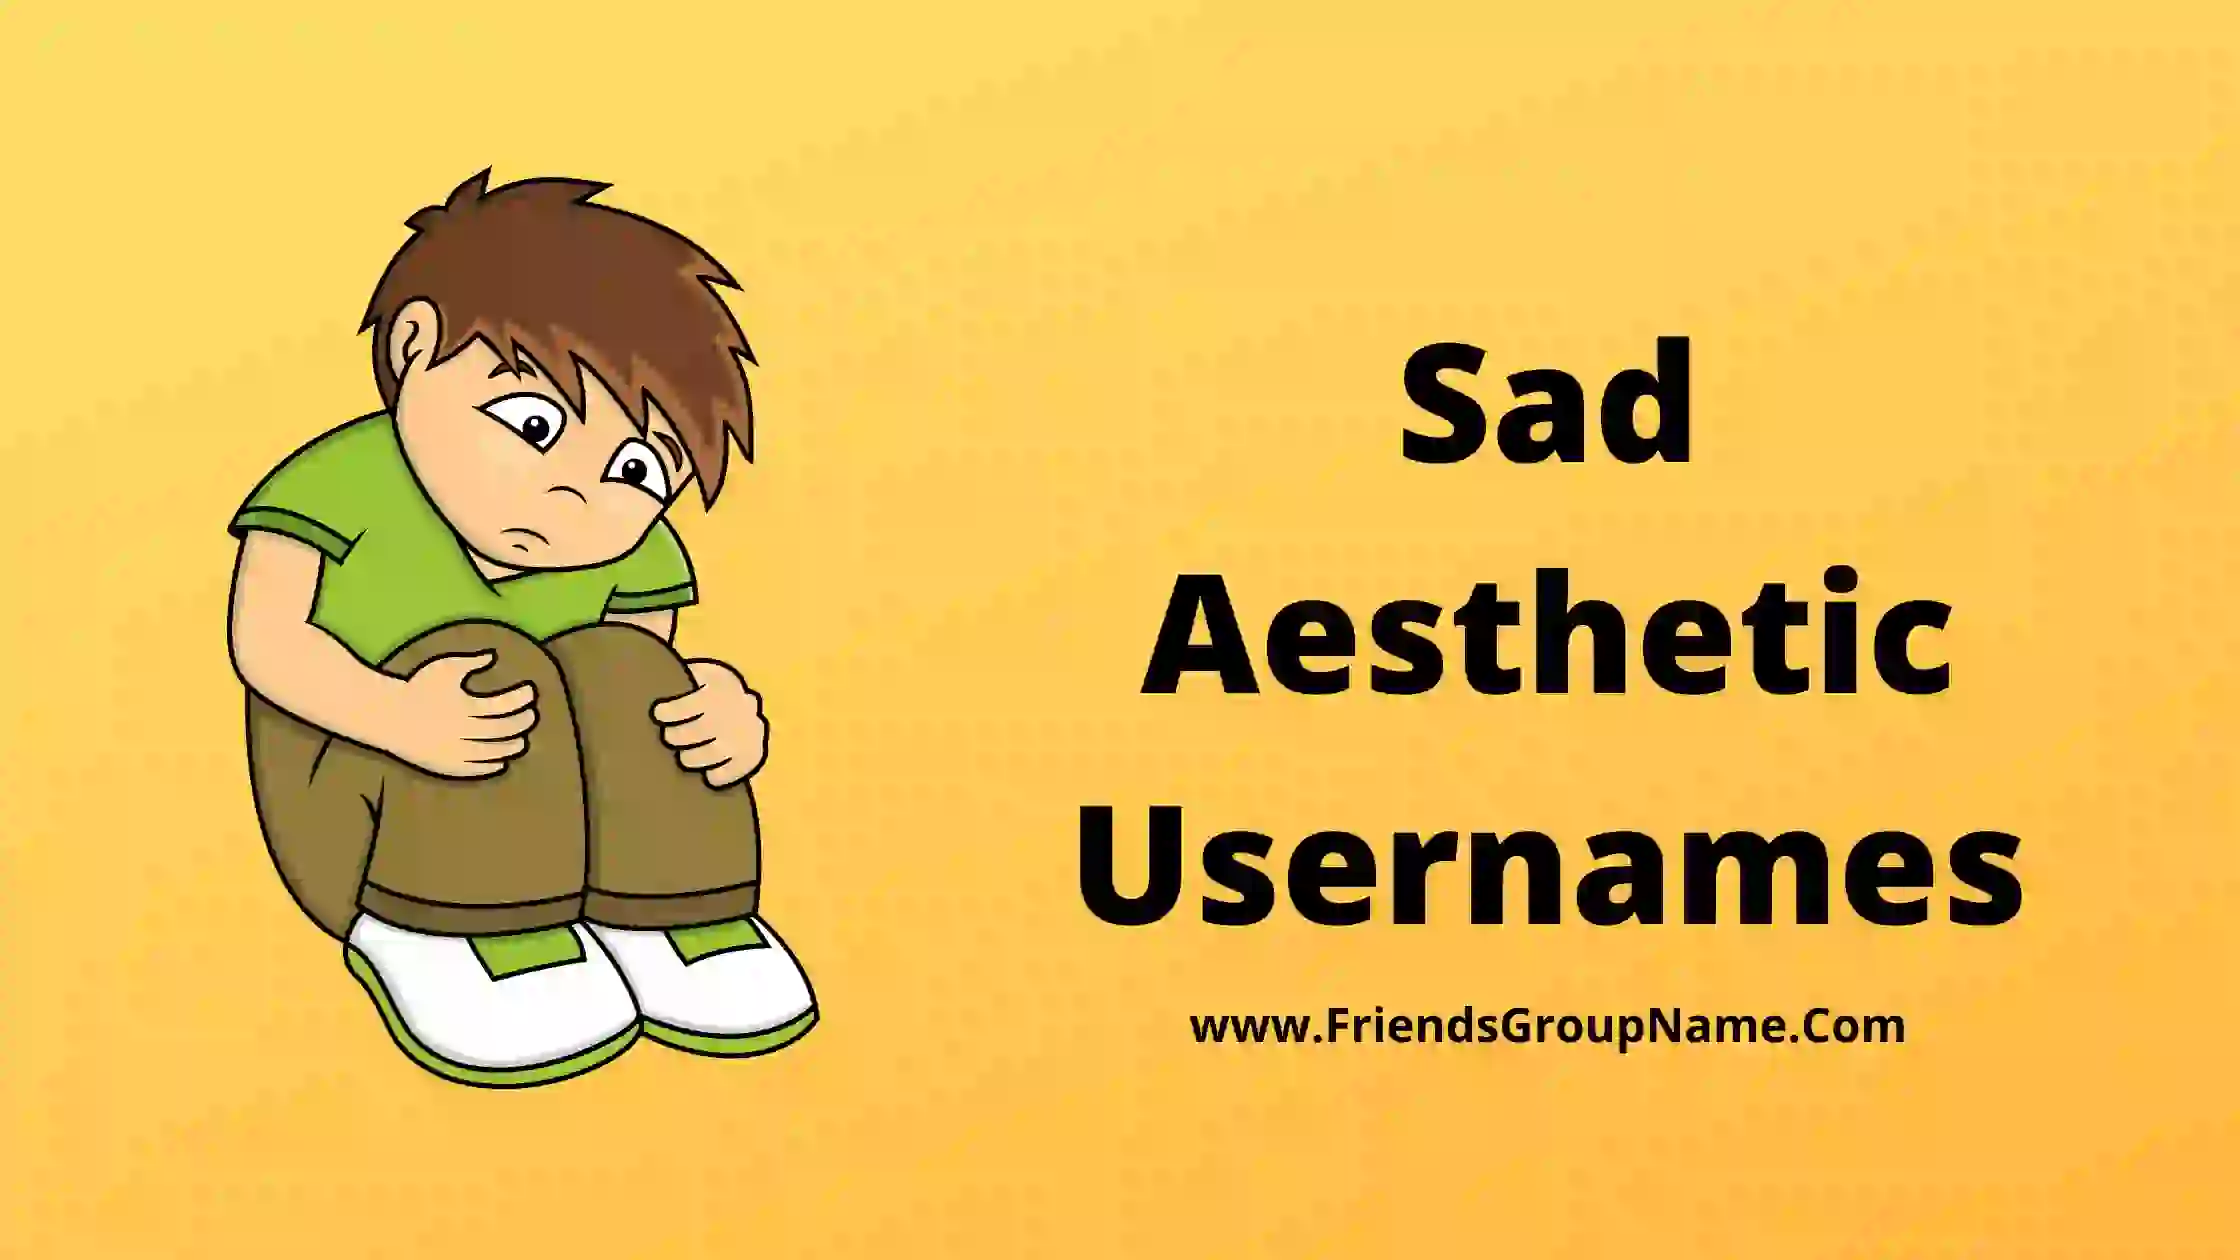 Sad Aesthetic Usernames